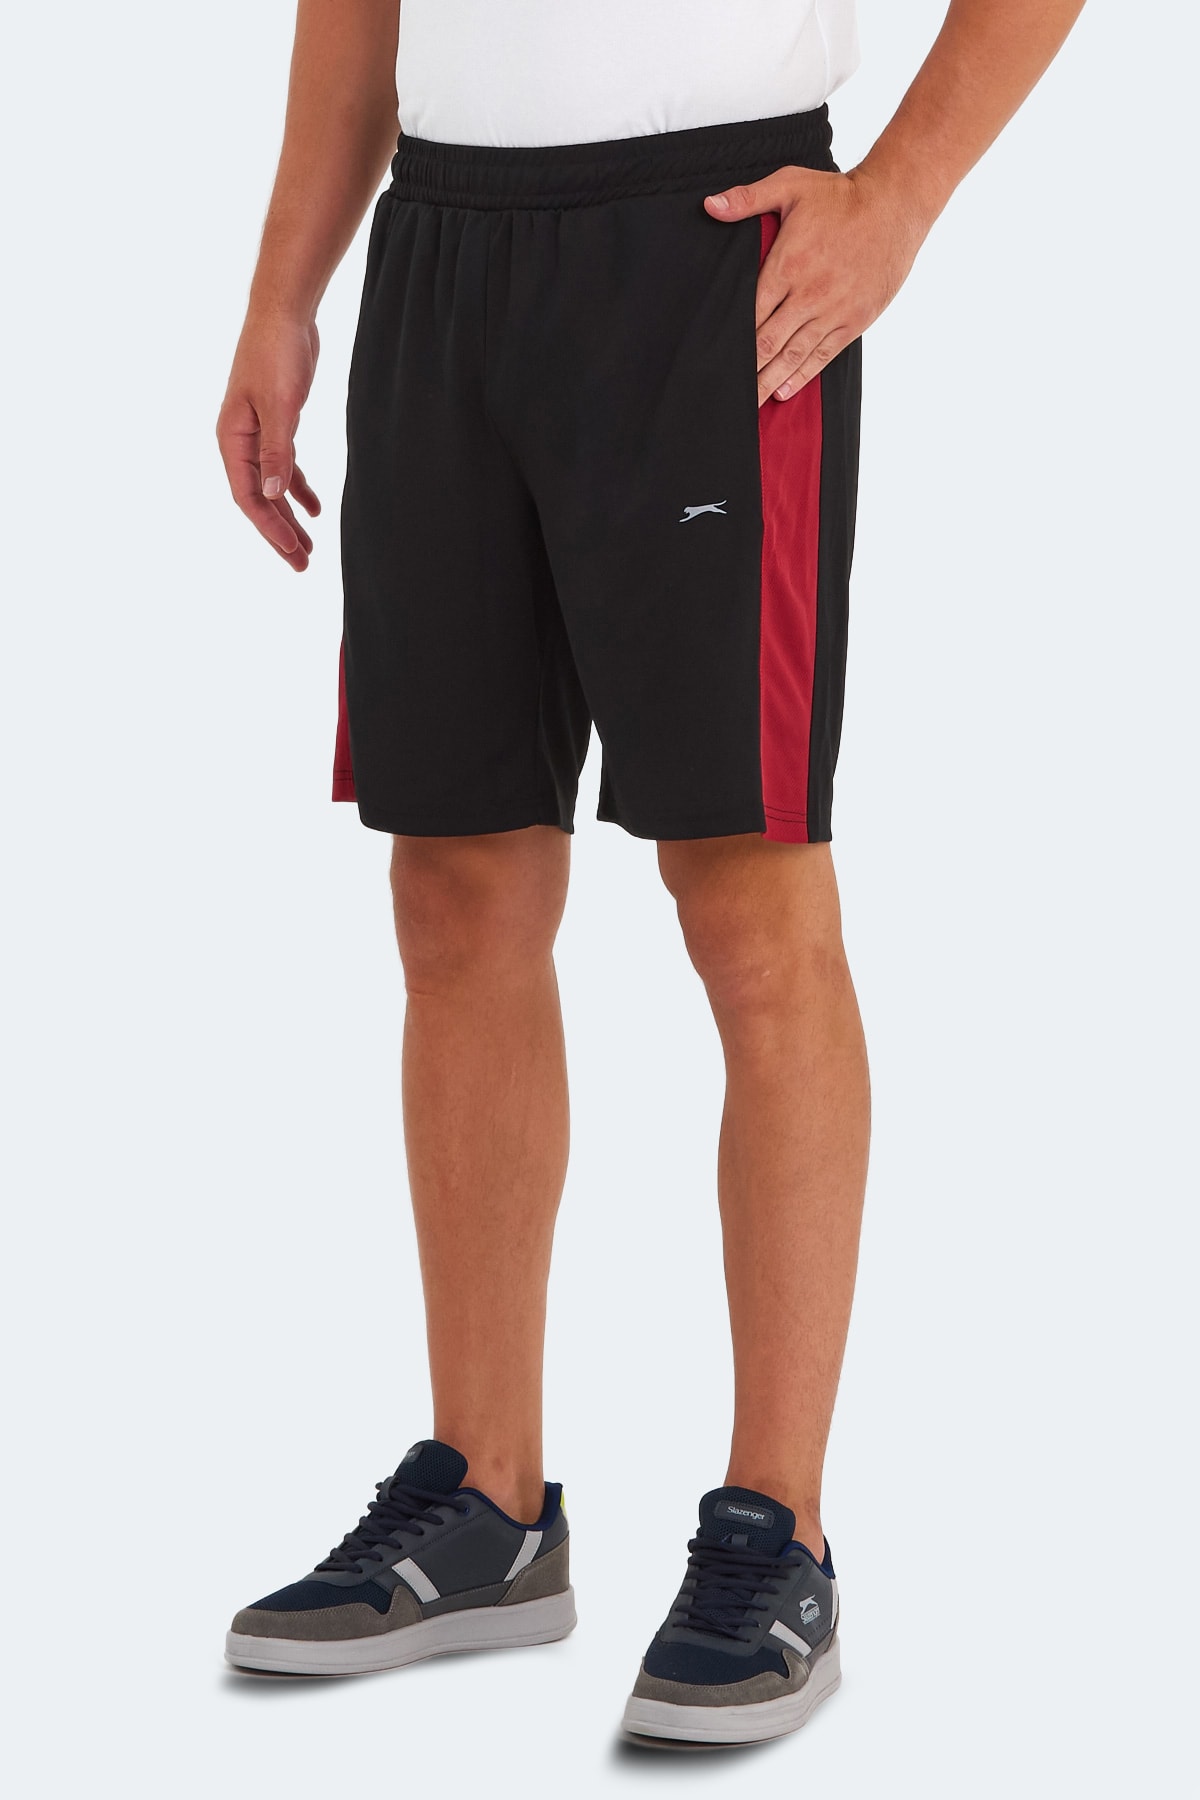 Slazenger REMAIN Men's Shorts Black / Red